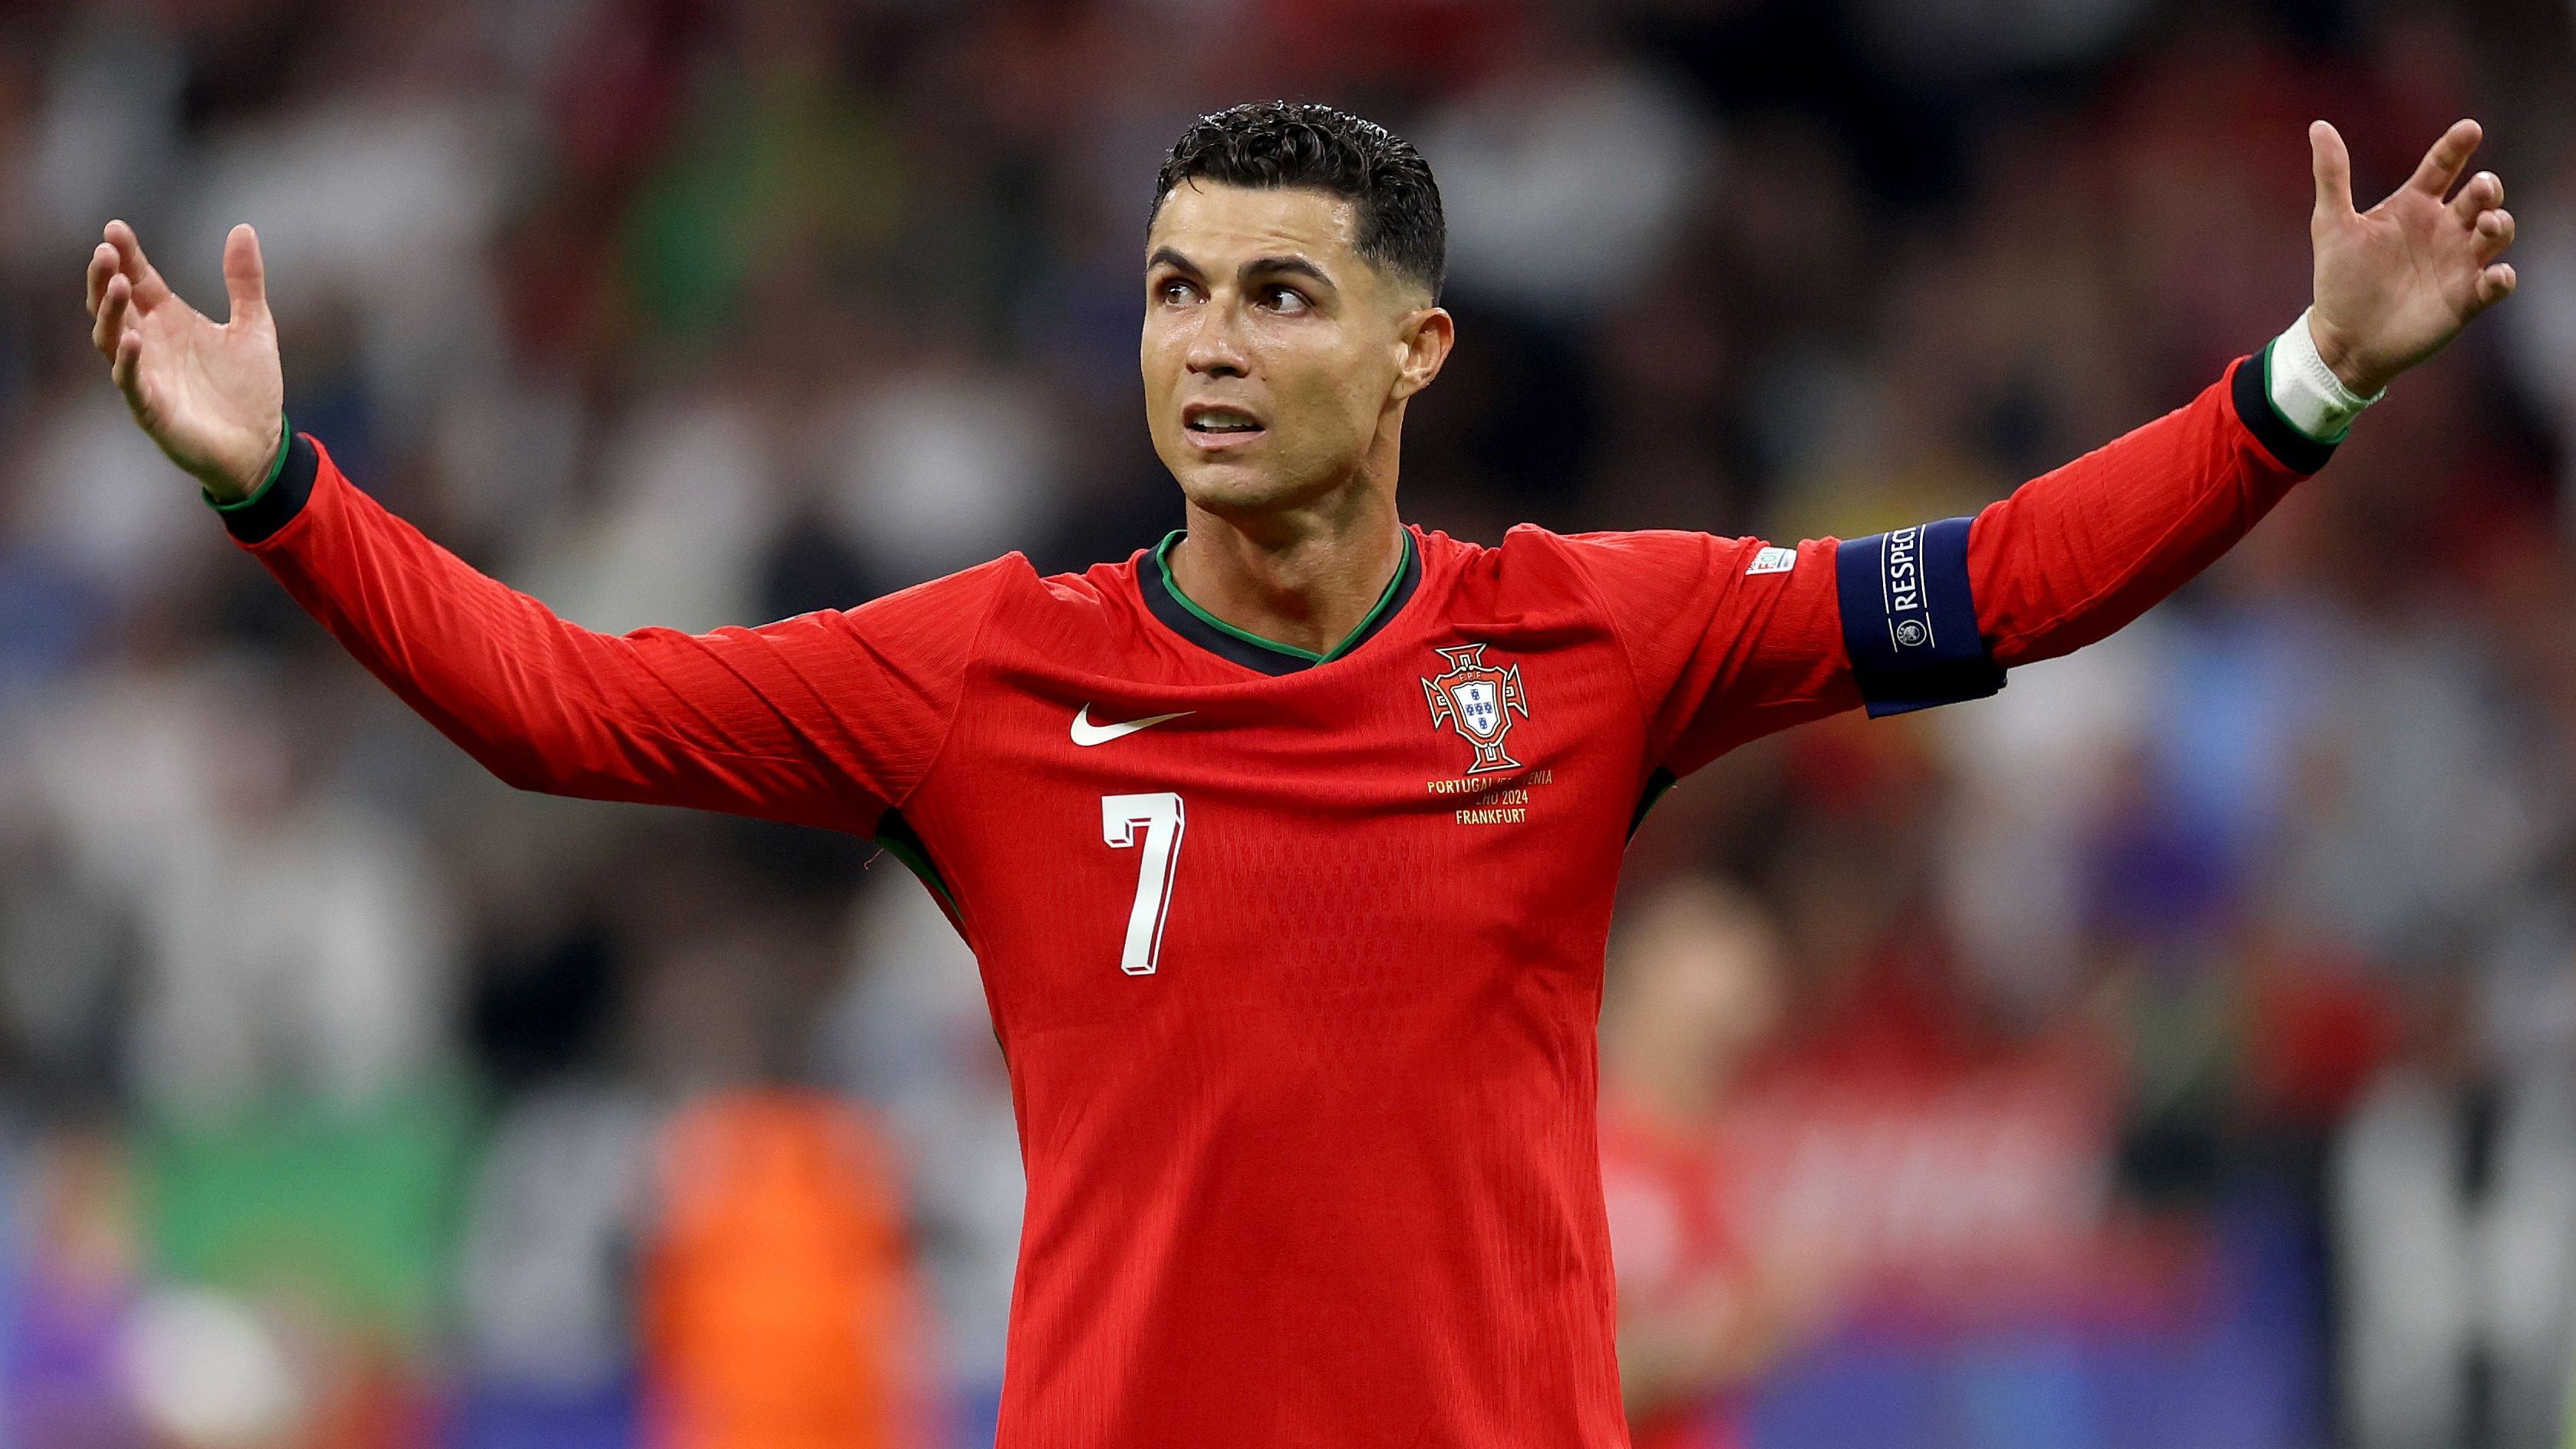 <strong>Cristiano Ronaldo</strong><br>Bist jetzt hat CR7 einen schweren Stand. Kein einziges Tor ist Cristiano Ronaldo gelungen, obwohl er stets so bemüht ist. Der verschossene Elfmeter gegen Slowenien war symptomatisch für den bisherigen Auftritt des 39-Jährigen von Al-Nassr. Immerhin: Ronaldo verwandelte unter großem Druck im Elfmeterschießen gegen die Slowenen und beteiligte sich so am Weiterkommen Portugals.